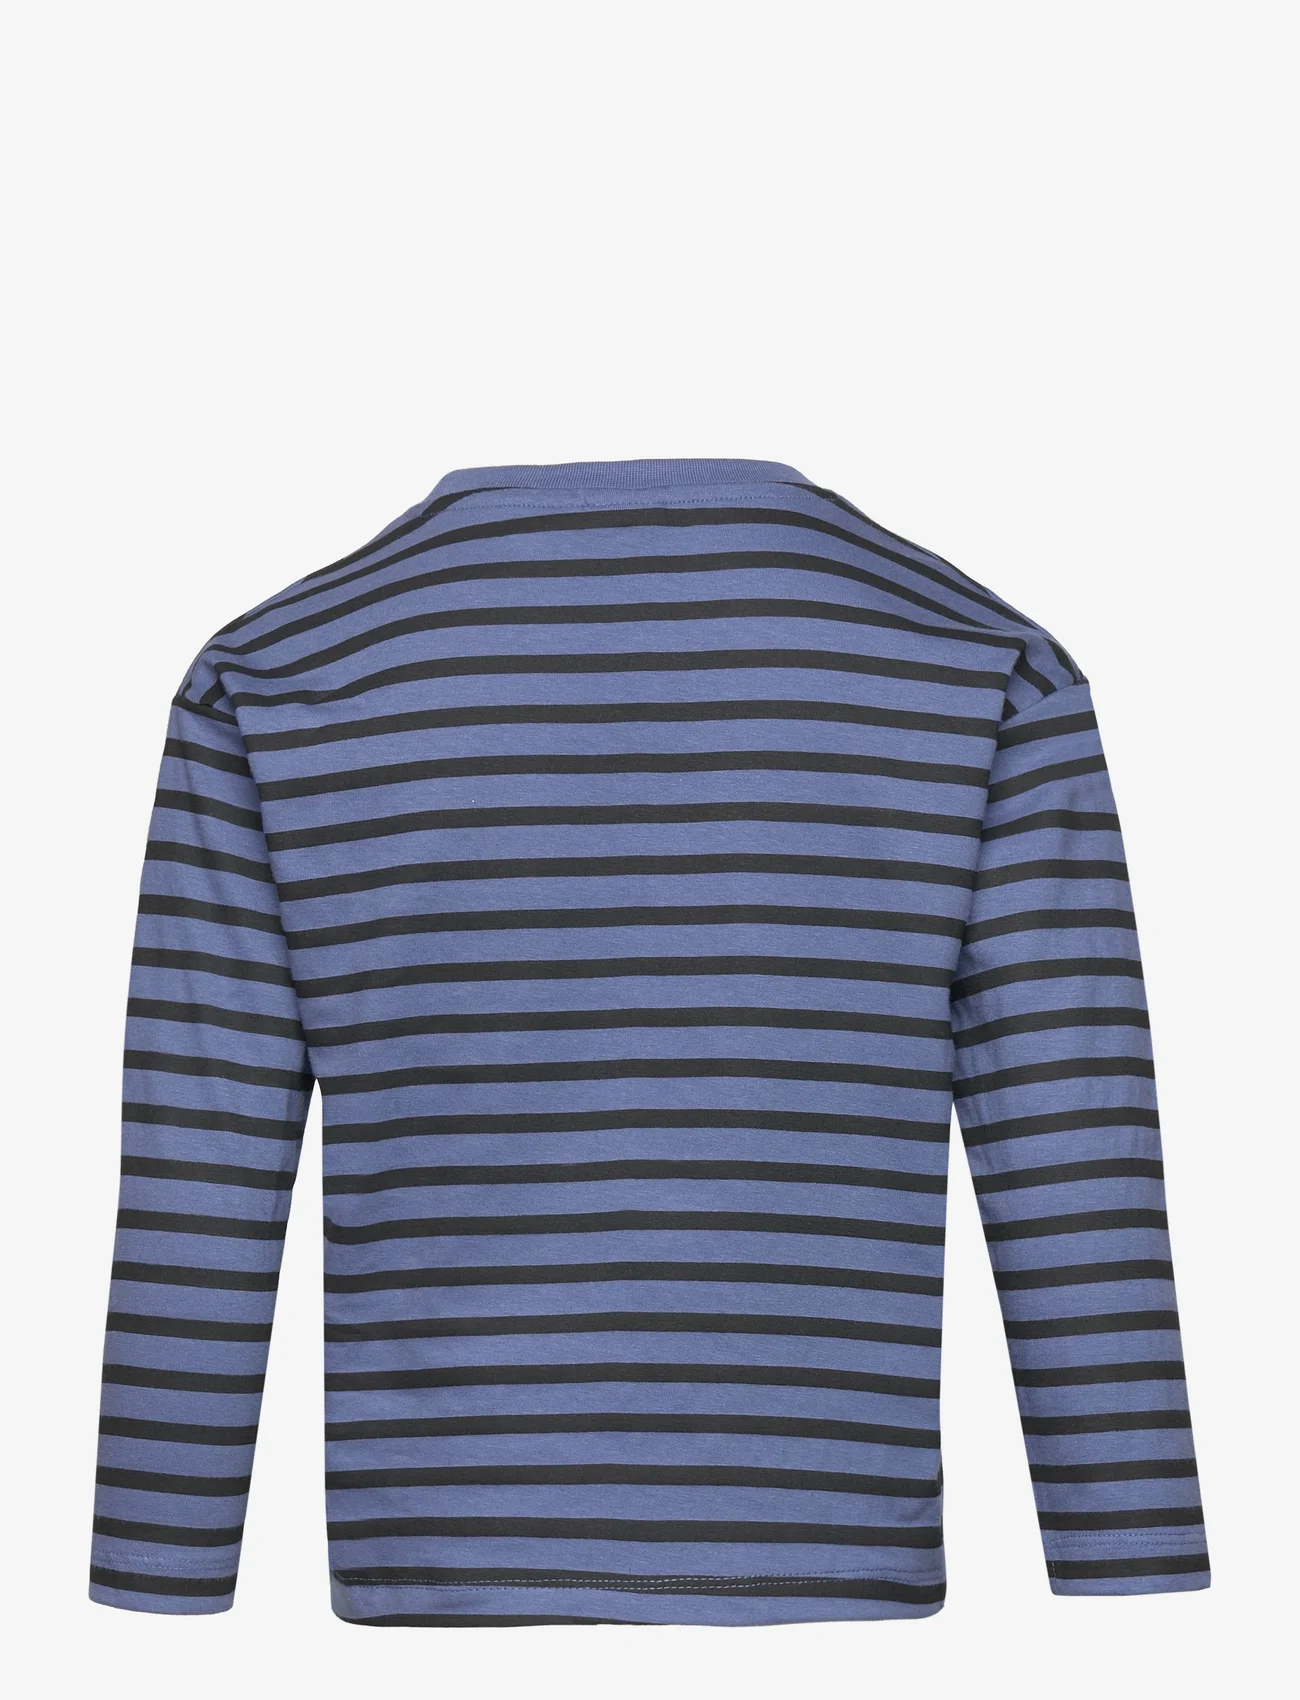 Peppa Pig - T-shirt ML - long-sleeved t-shirts - blue - 1